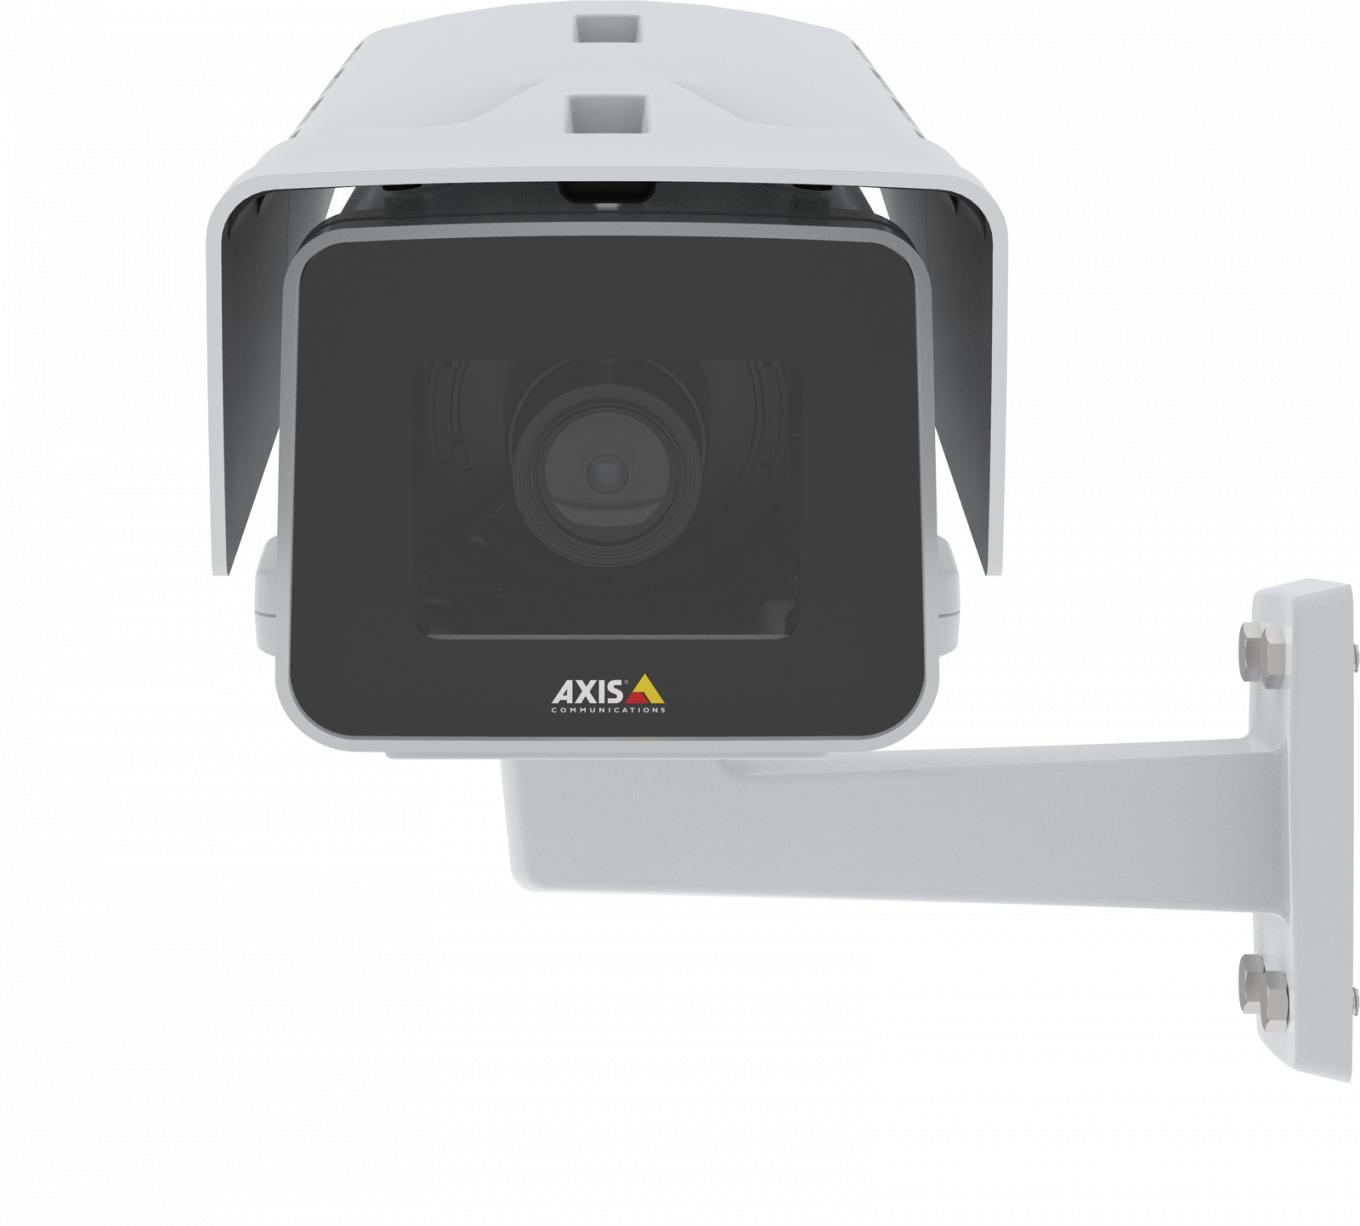 IP-камера AXIS P1375-E IP Camera, установленная на стене, вид спереди